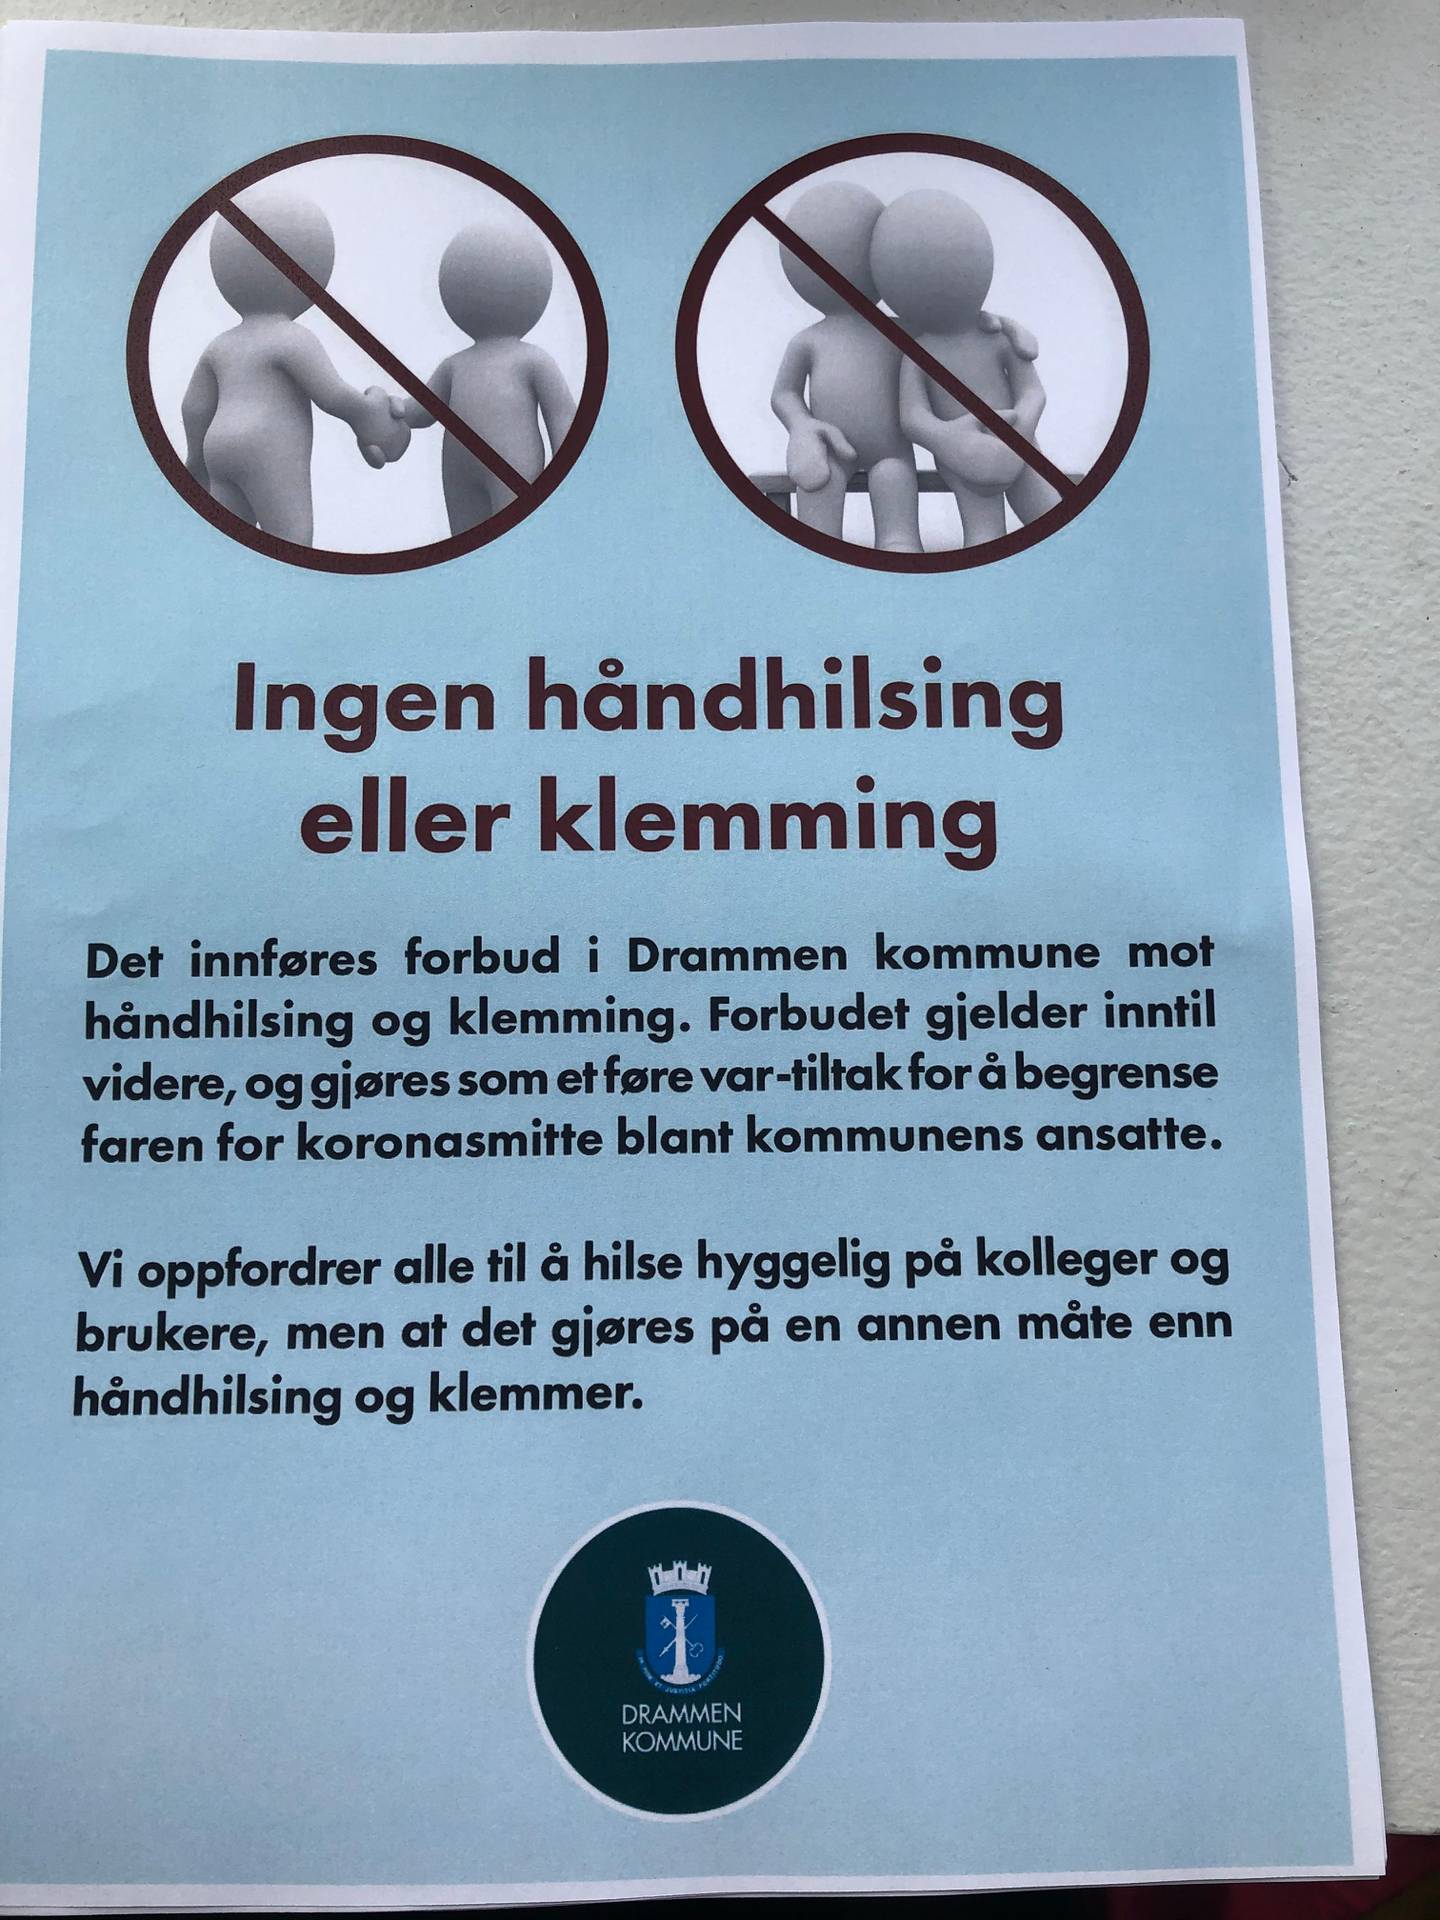 Et tydelig budskap skal forebygge smitte av koronavirus blant Drammen kommunes ansatte og brukere.